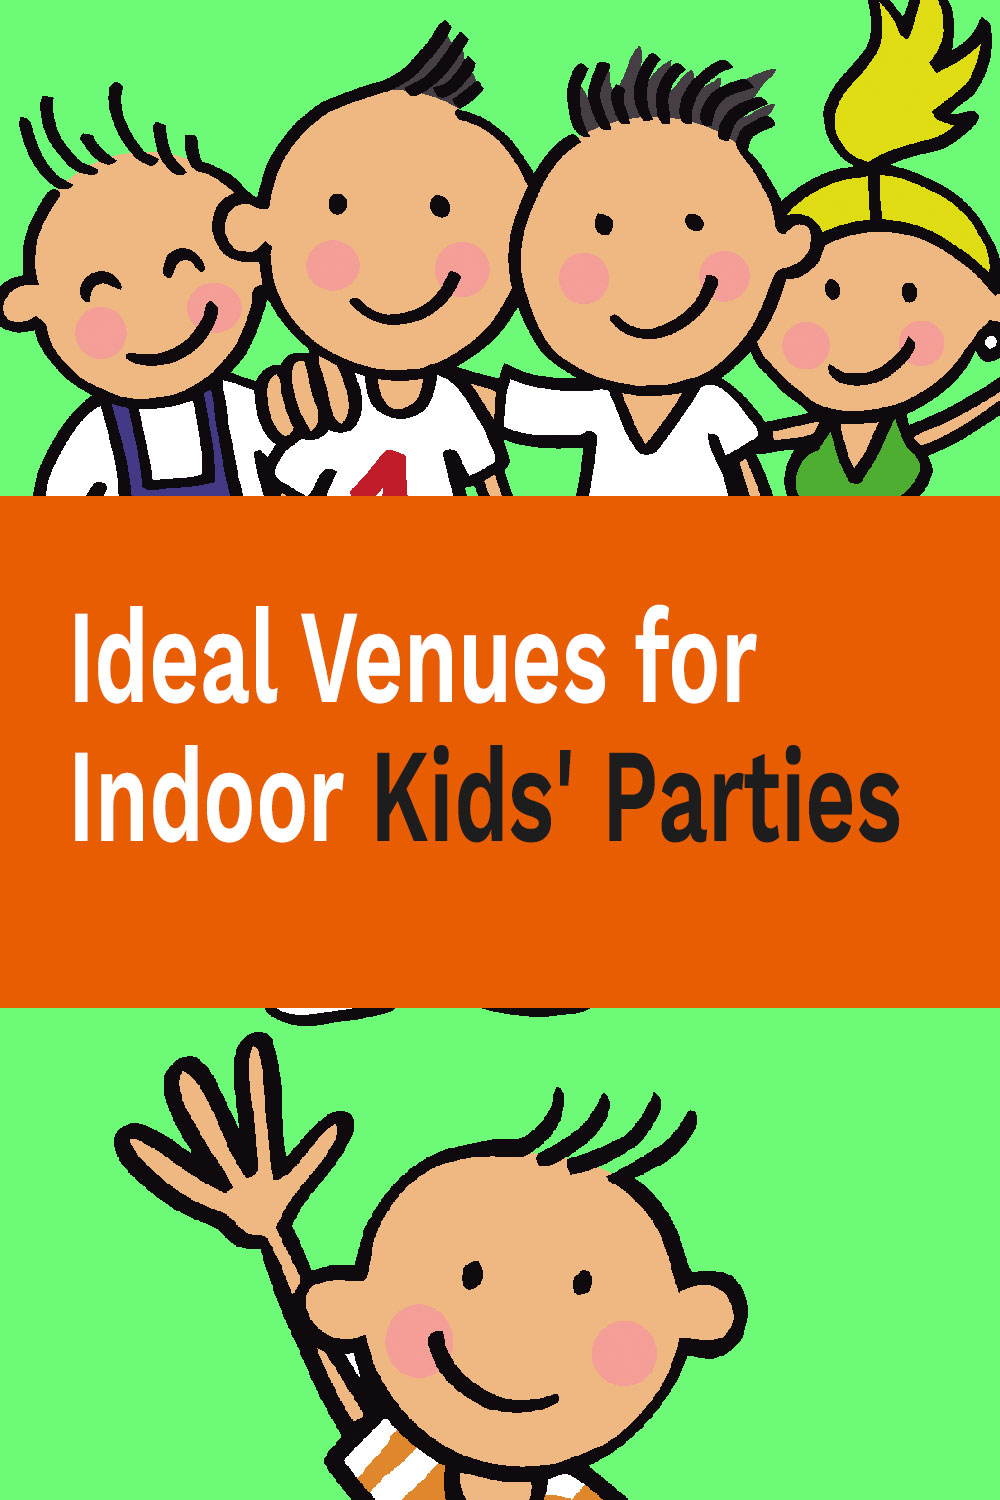 Ideal Venues for Indoor Kids' Parties